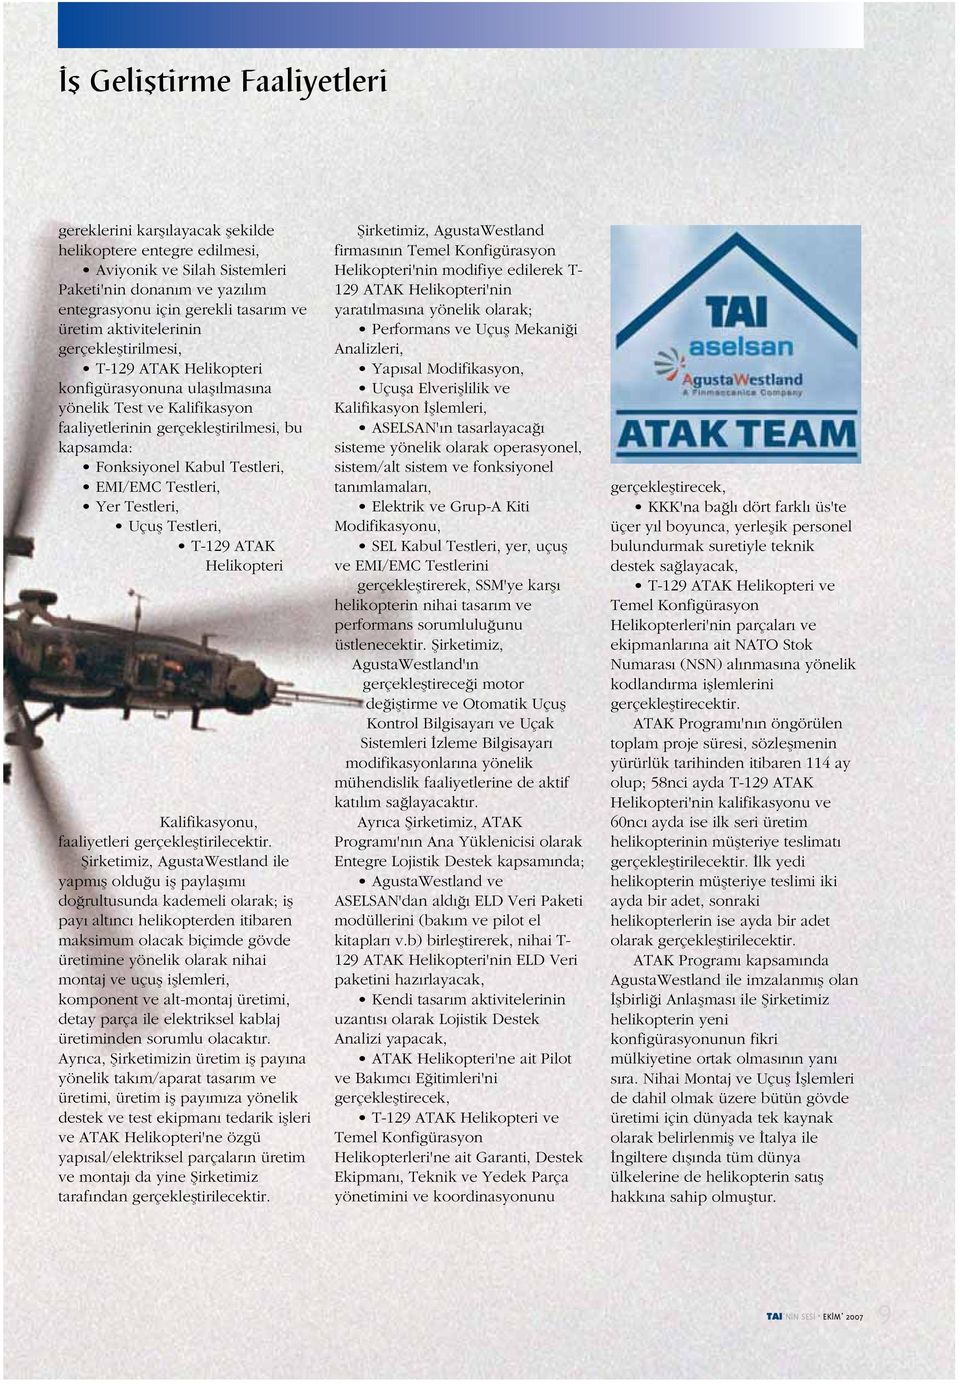 EMI/EMC Testleri, Yer Testleri, Uçuş Testleri, T-129 ATAK Helikopteri Kalifikasyonu, faaliyetleri gerçekleştirilecektir.